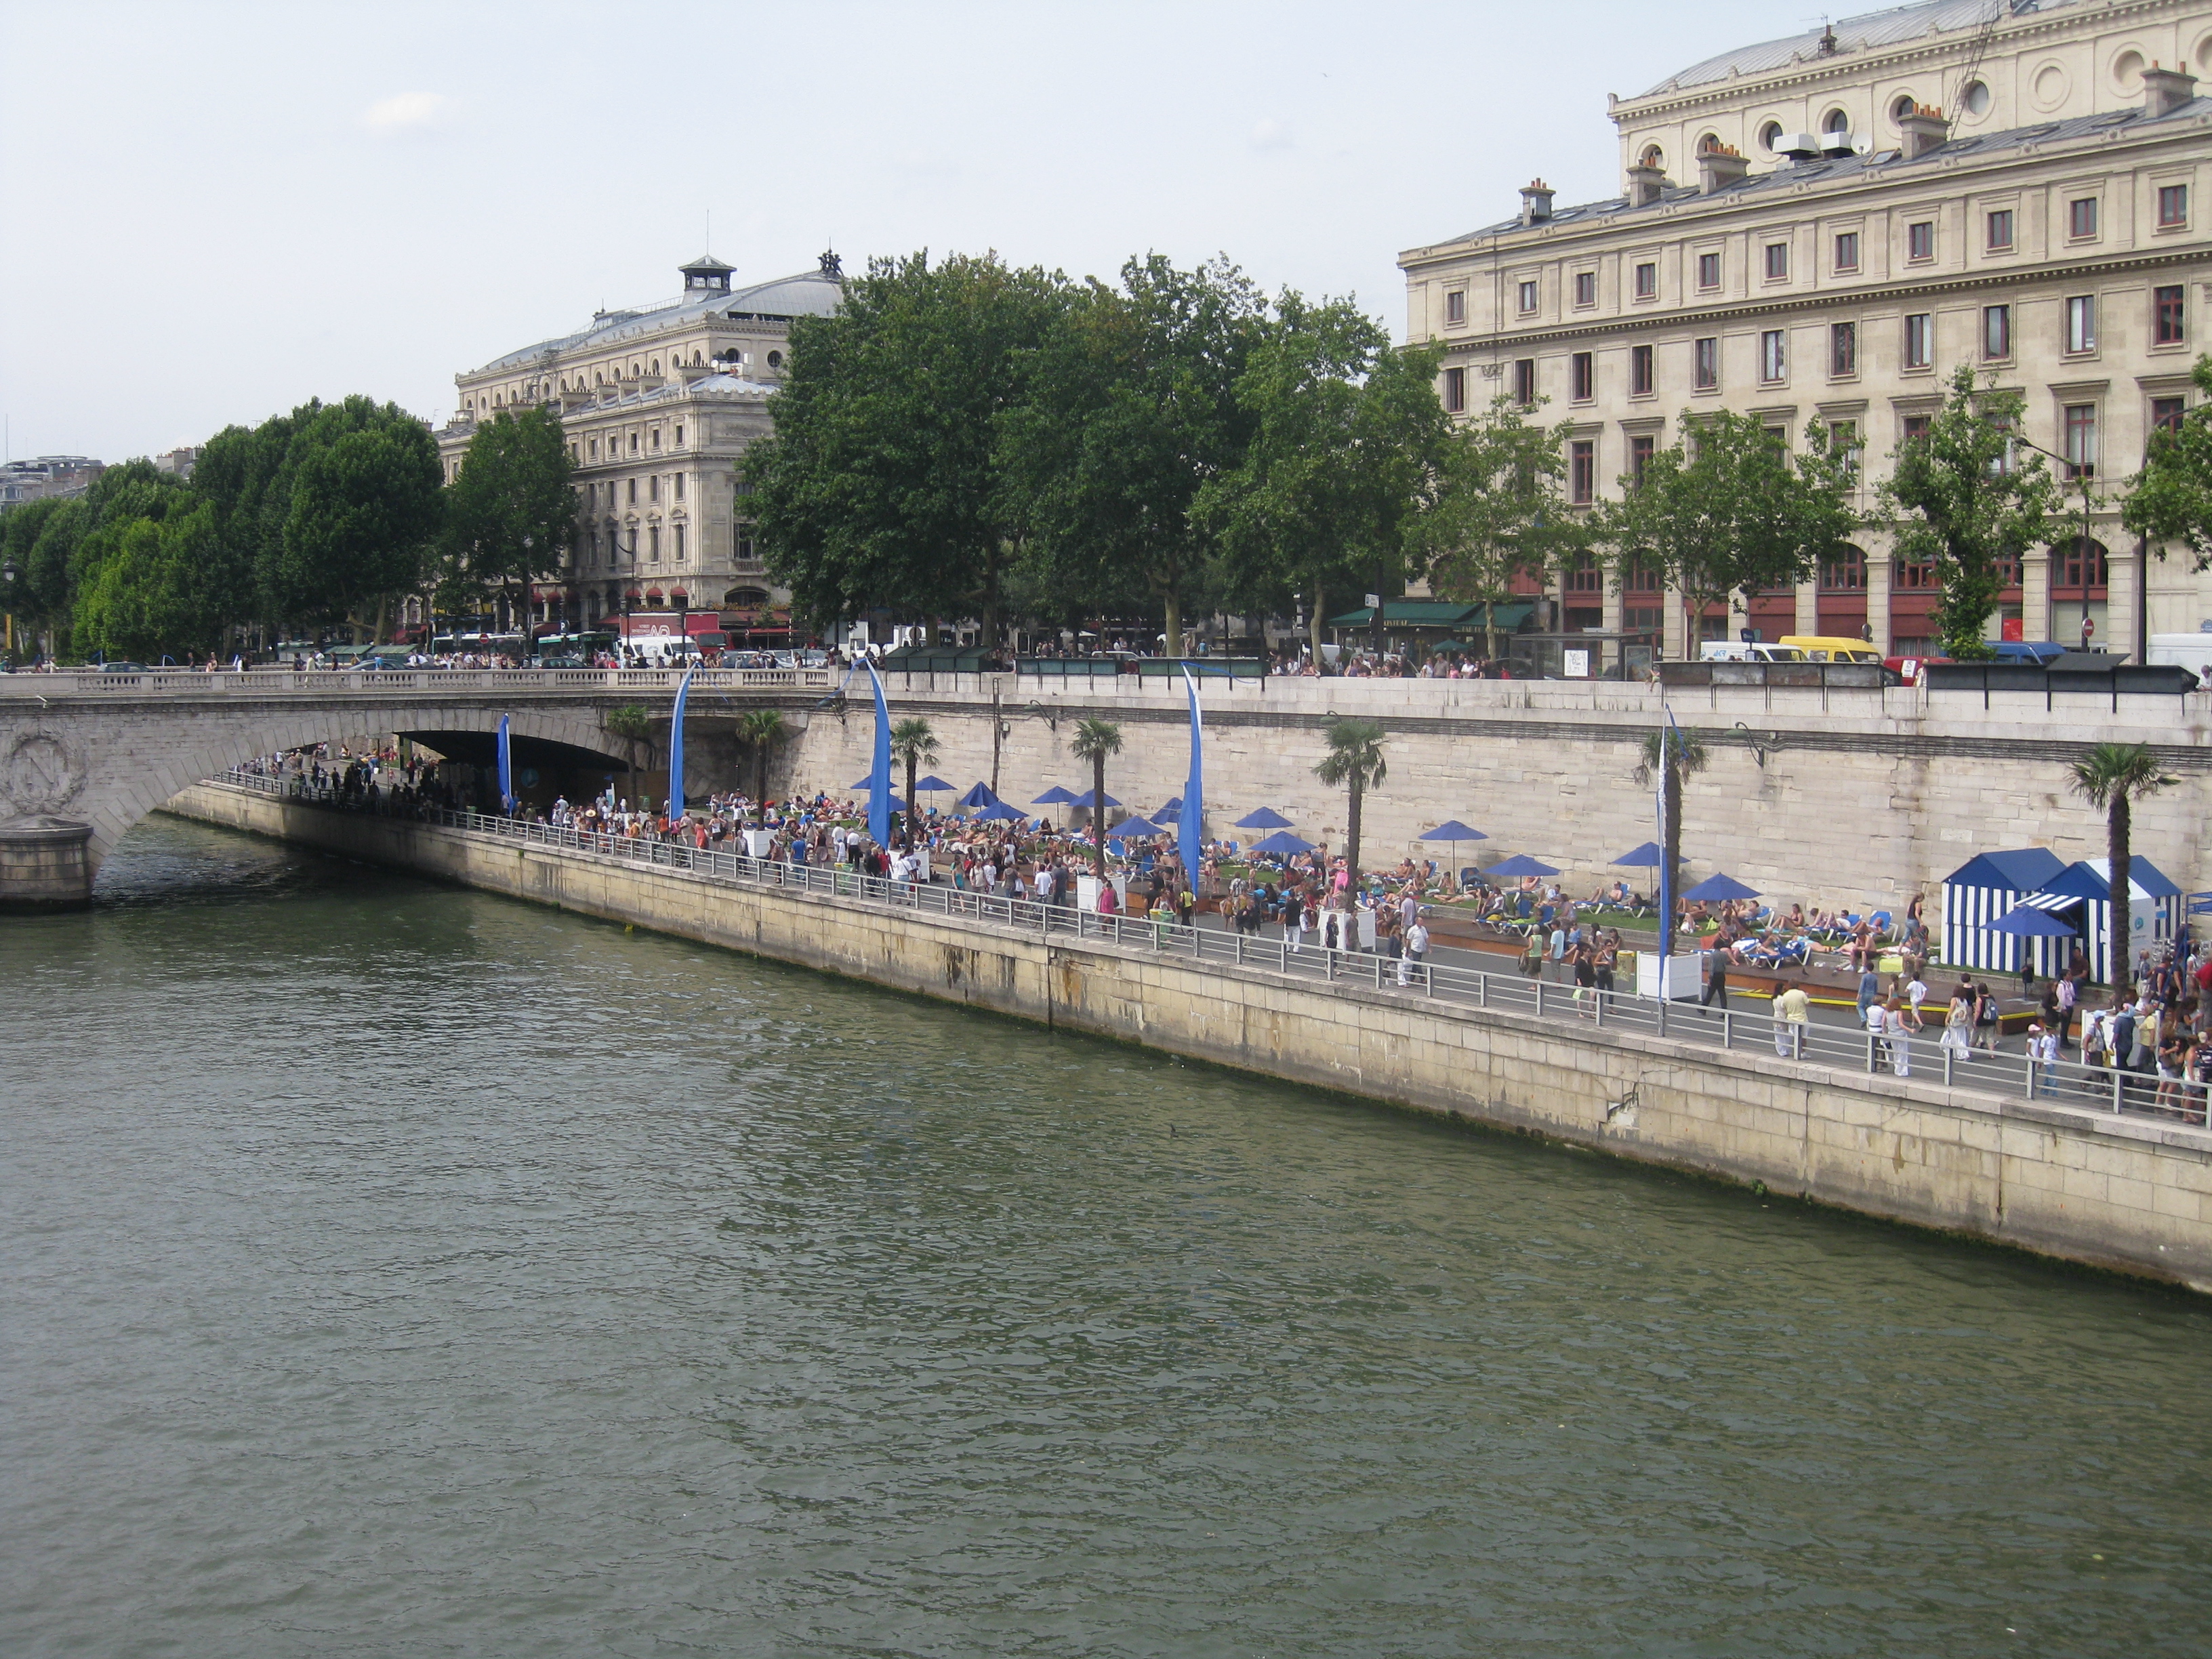 Paris Plages along the Seine